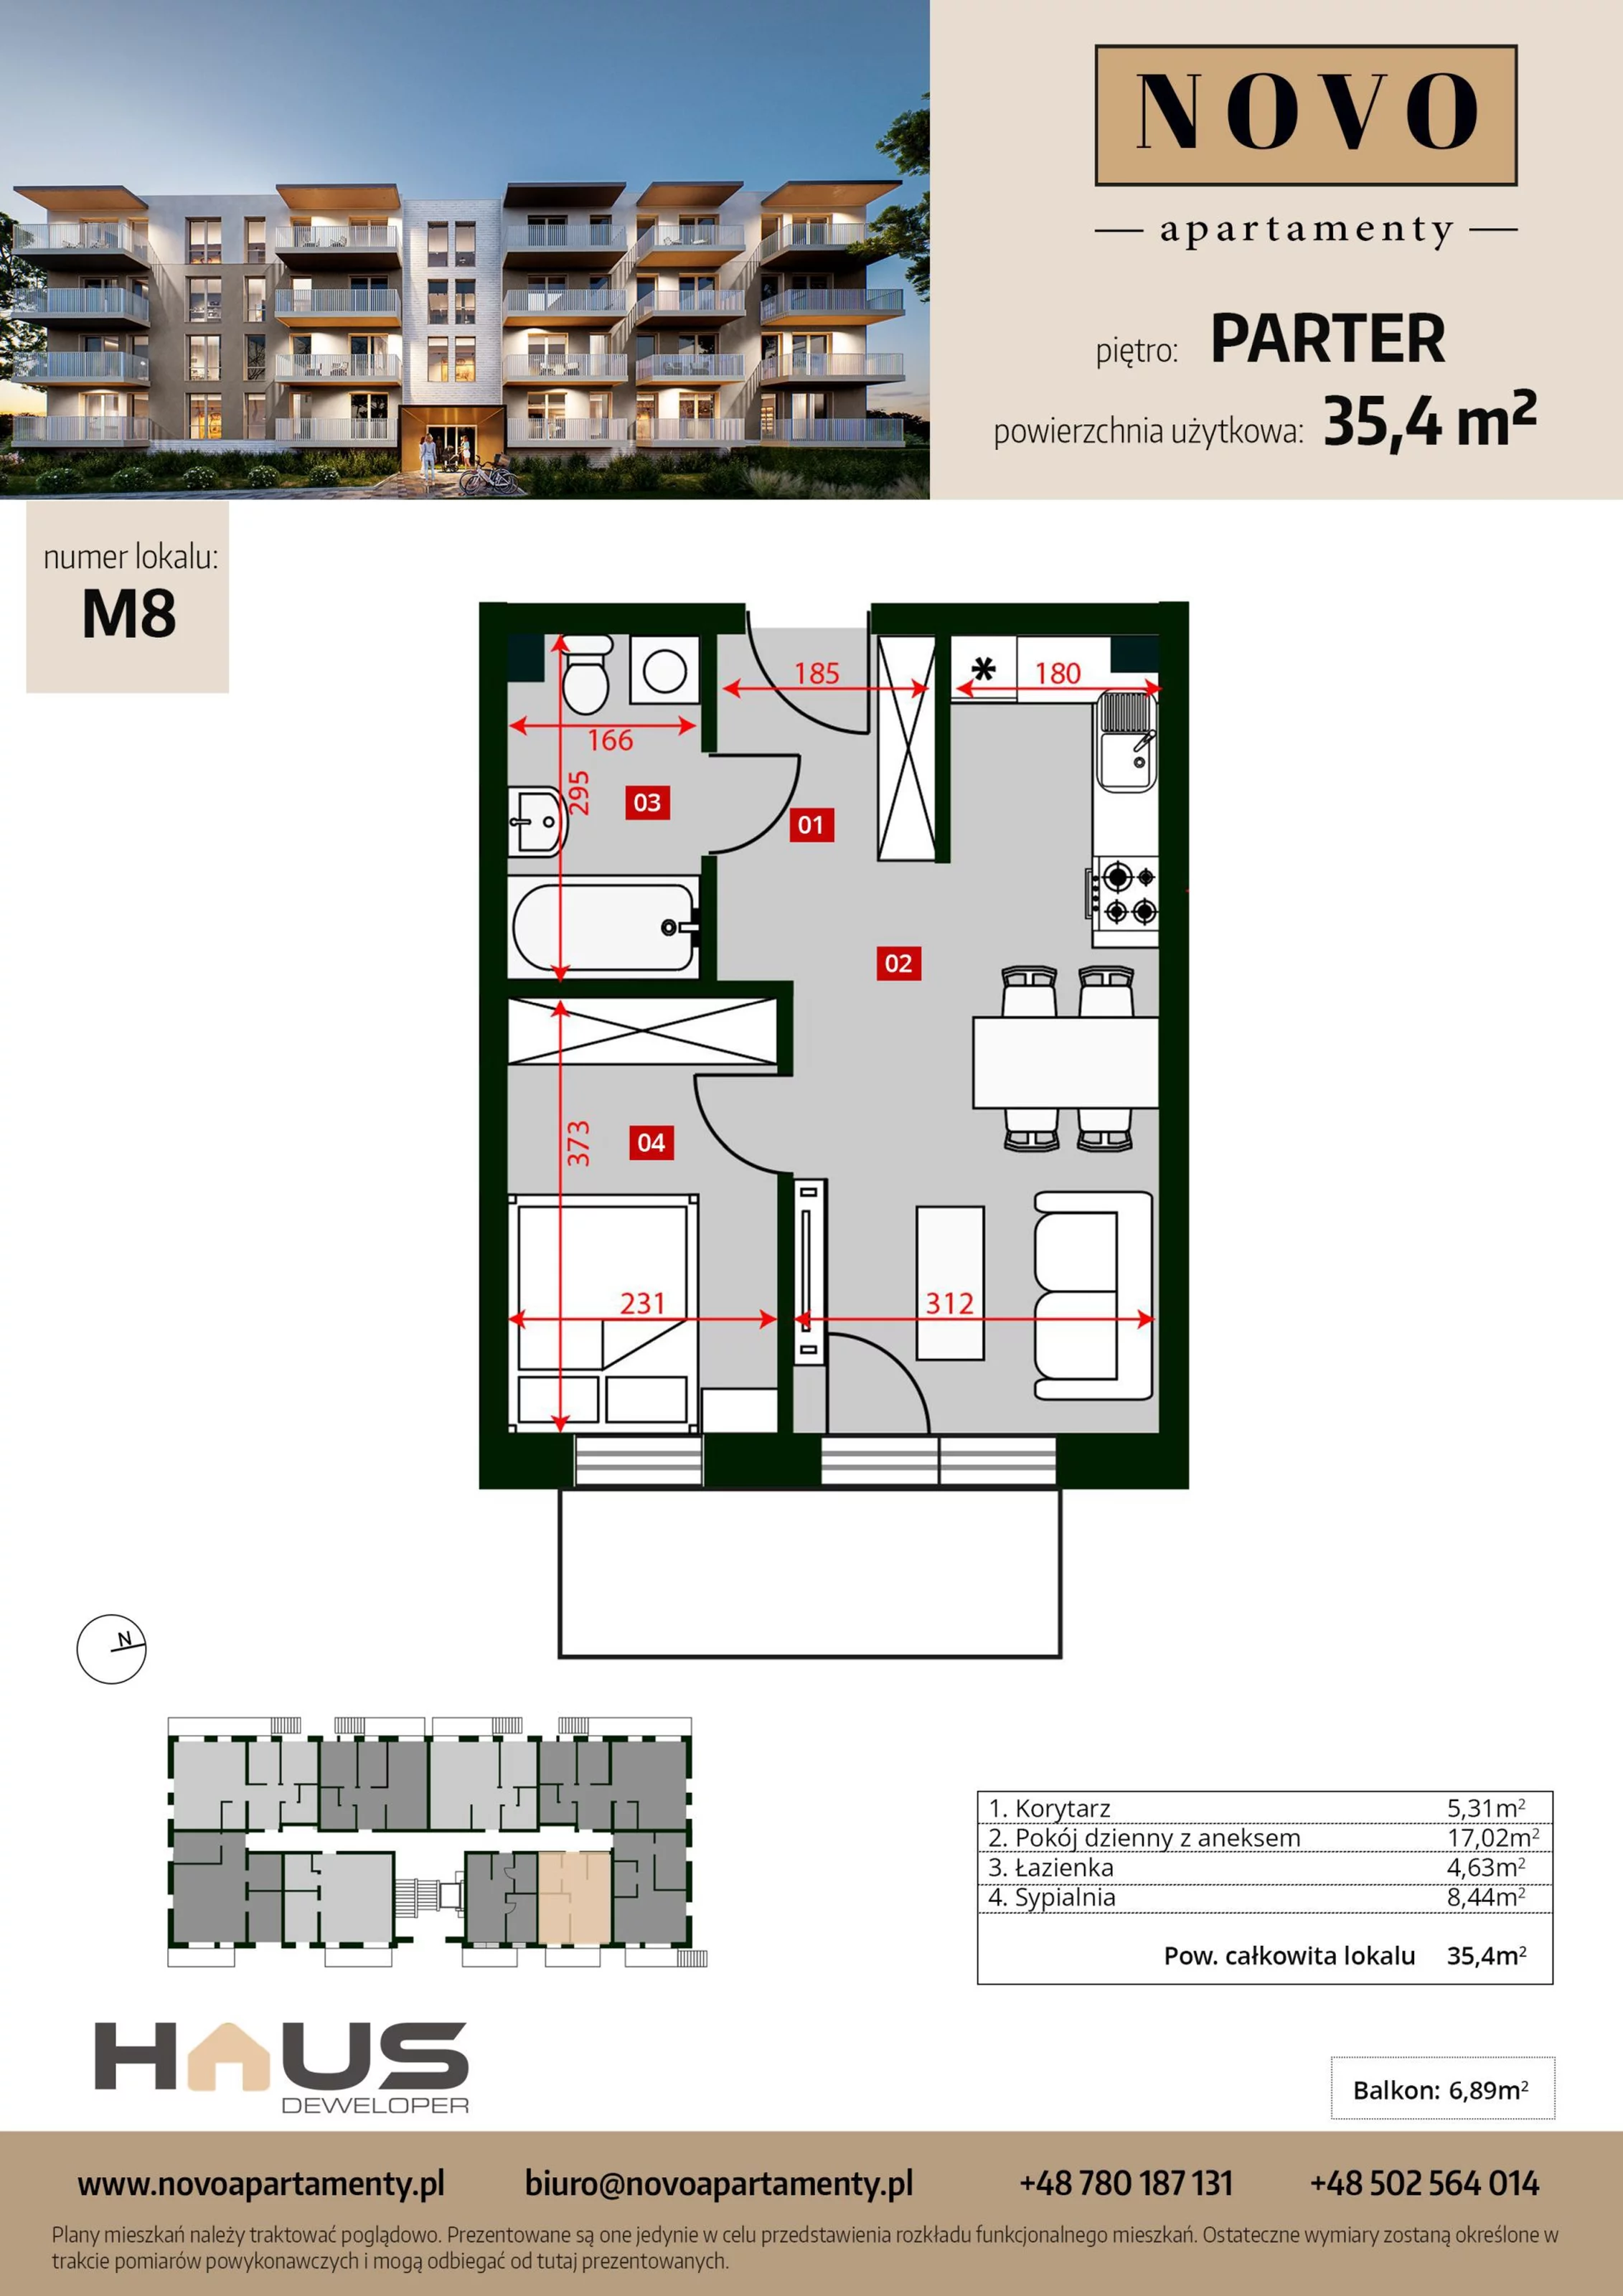 Mieszkanie 35,40 m², parter, oferta nr M8, Apartamenty NOVO, Nysa, ul. Franciszkańska